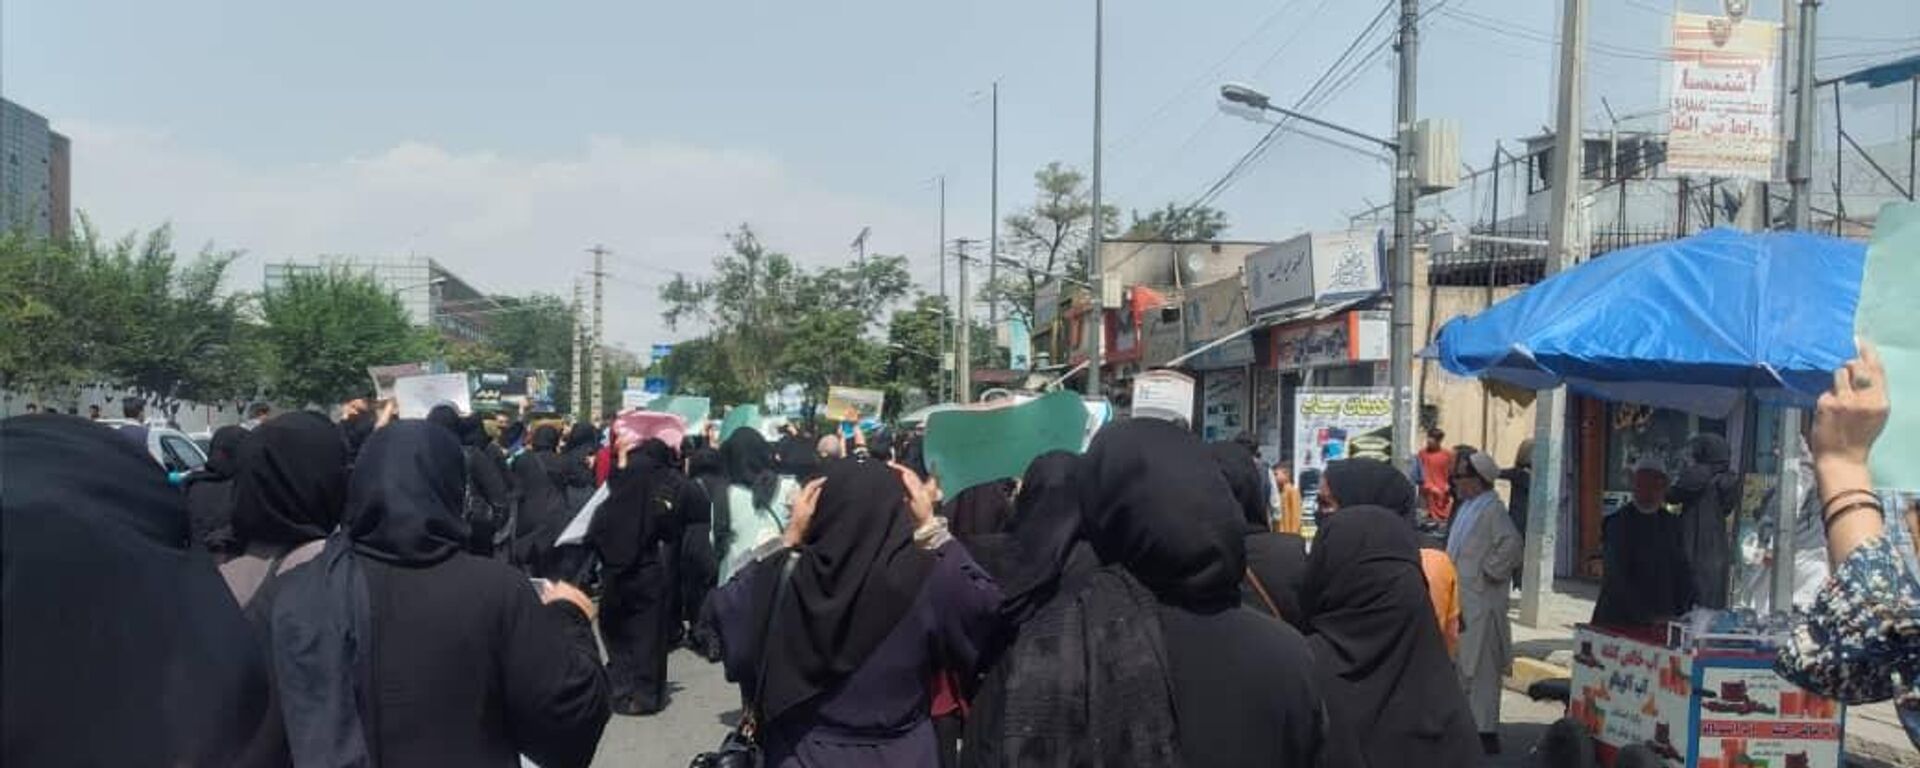   اعتراض زنان در کابل با گلوله طالبان پاسخ داده شد   - اسپوتنیک افغانستان  , 1920, 13.08.2022